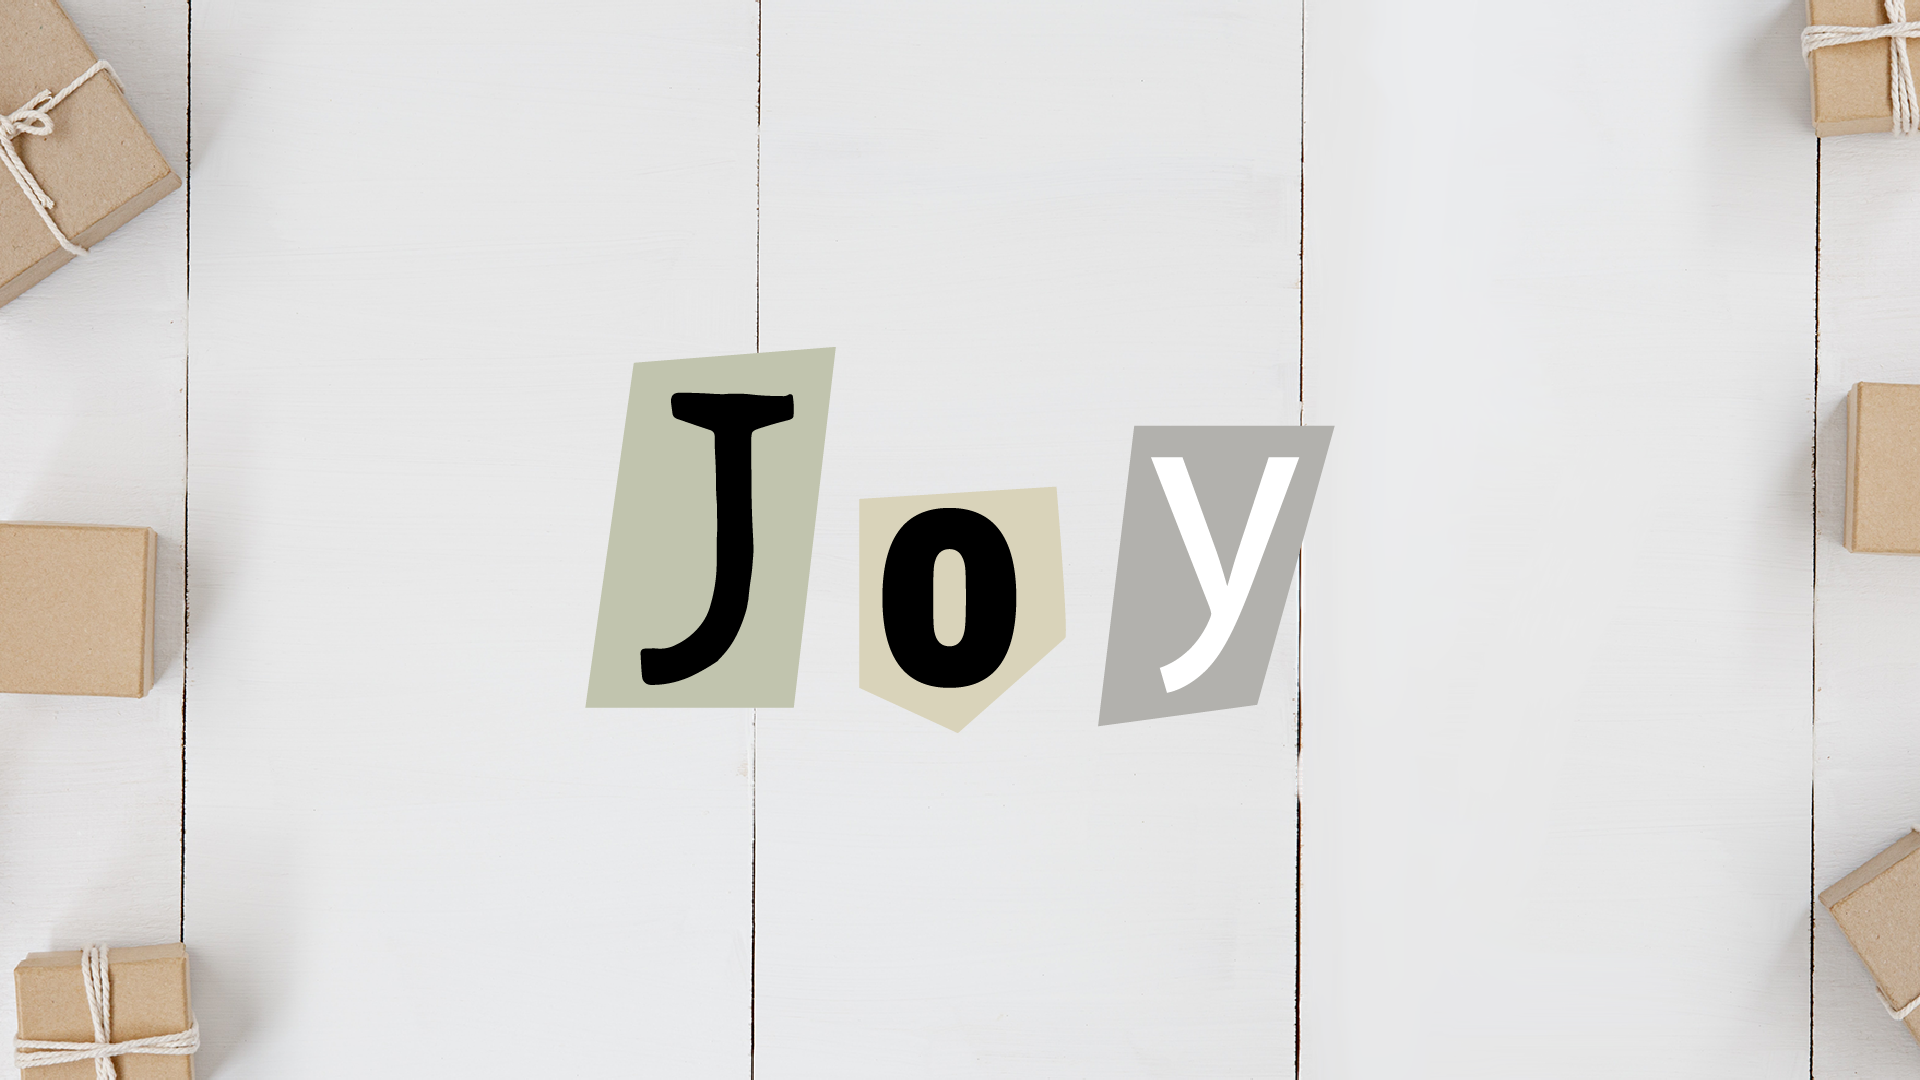 Thursday, Dec. 15th (Joy)